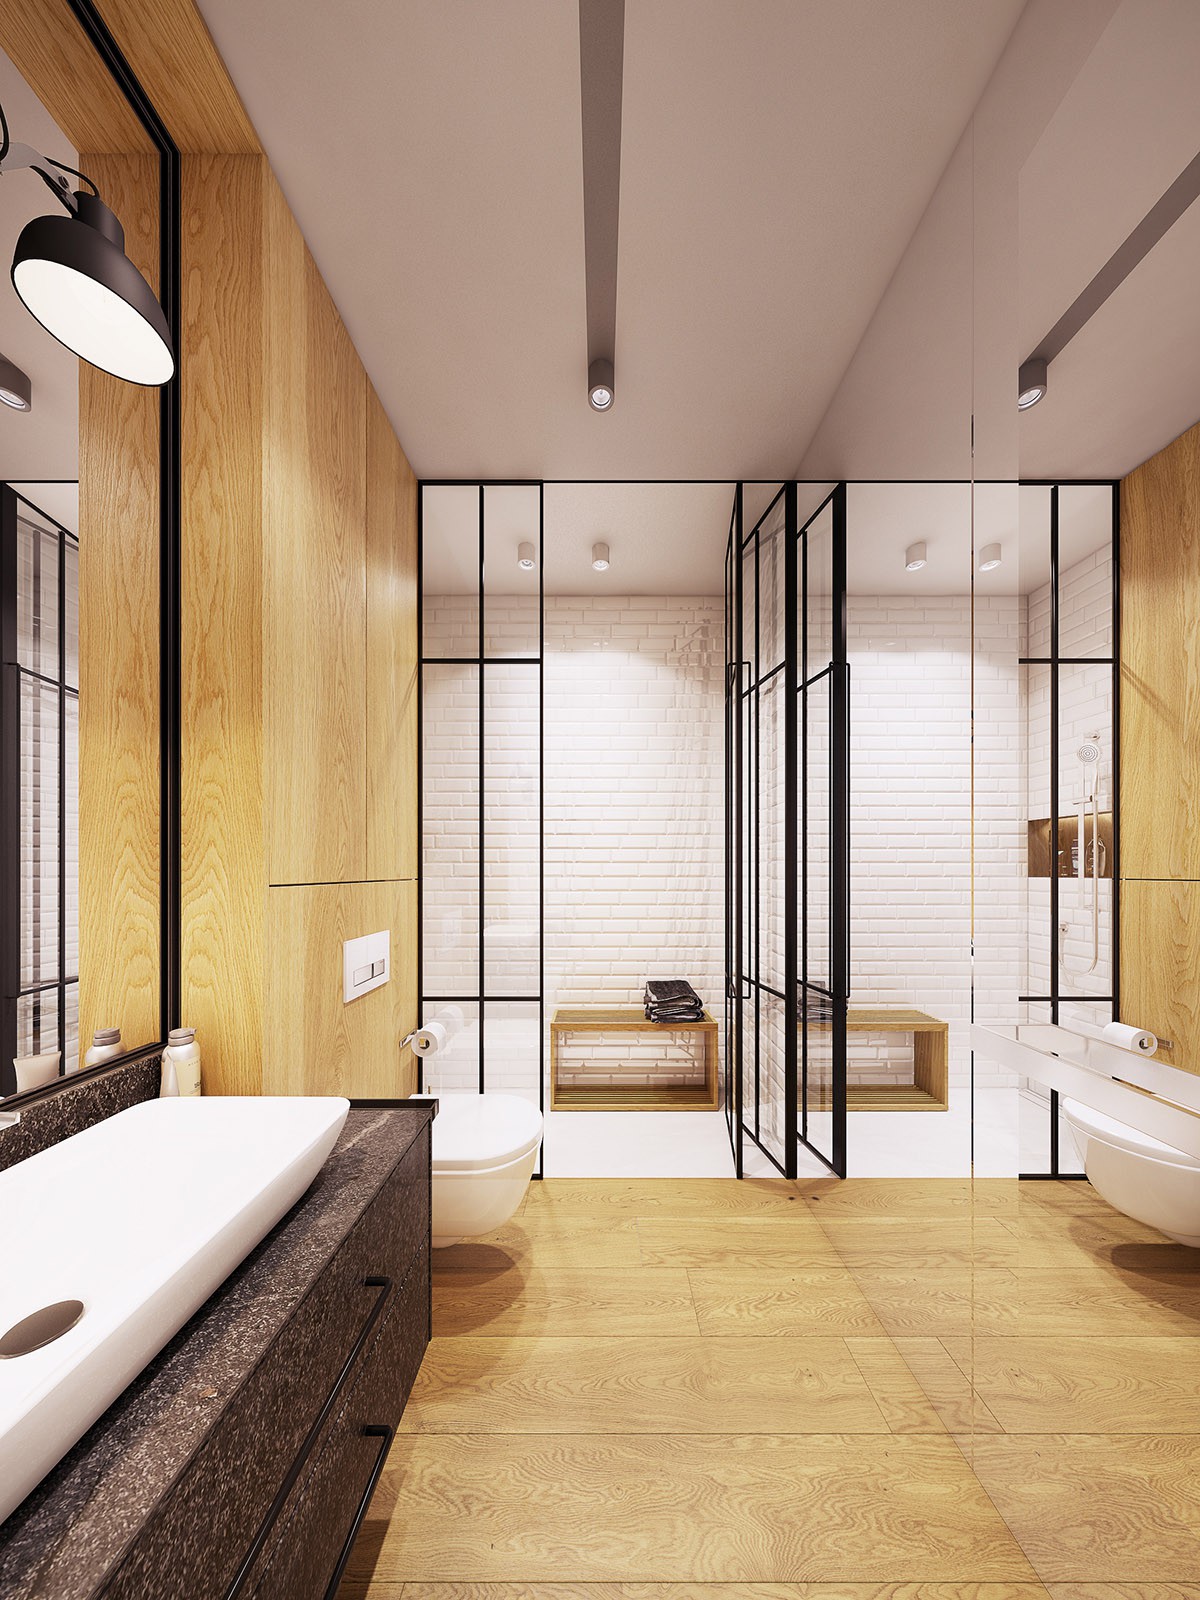 Hình ảnh phòng tắm hiện đại với cửa kính khung đen, sàn gỗ, gương lớn, nội thất trắng